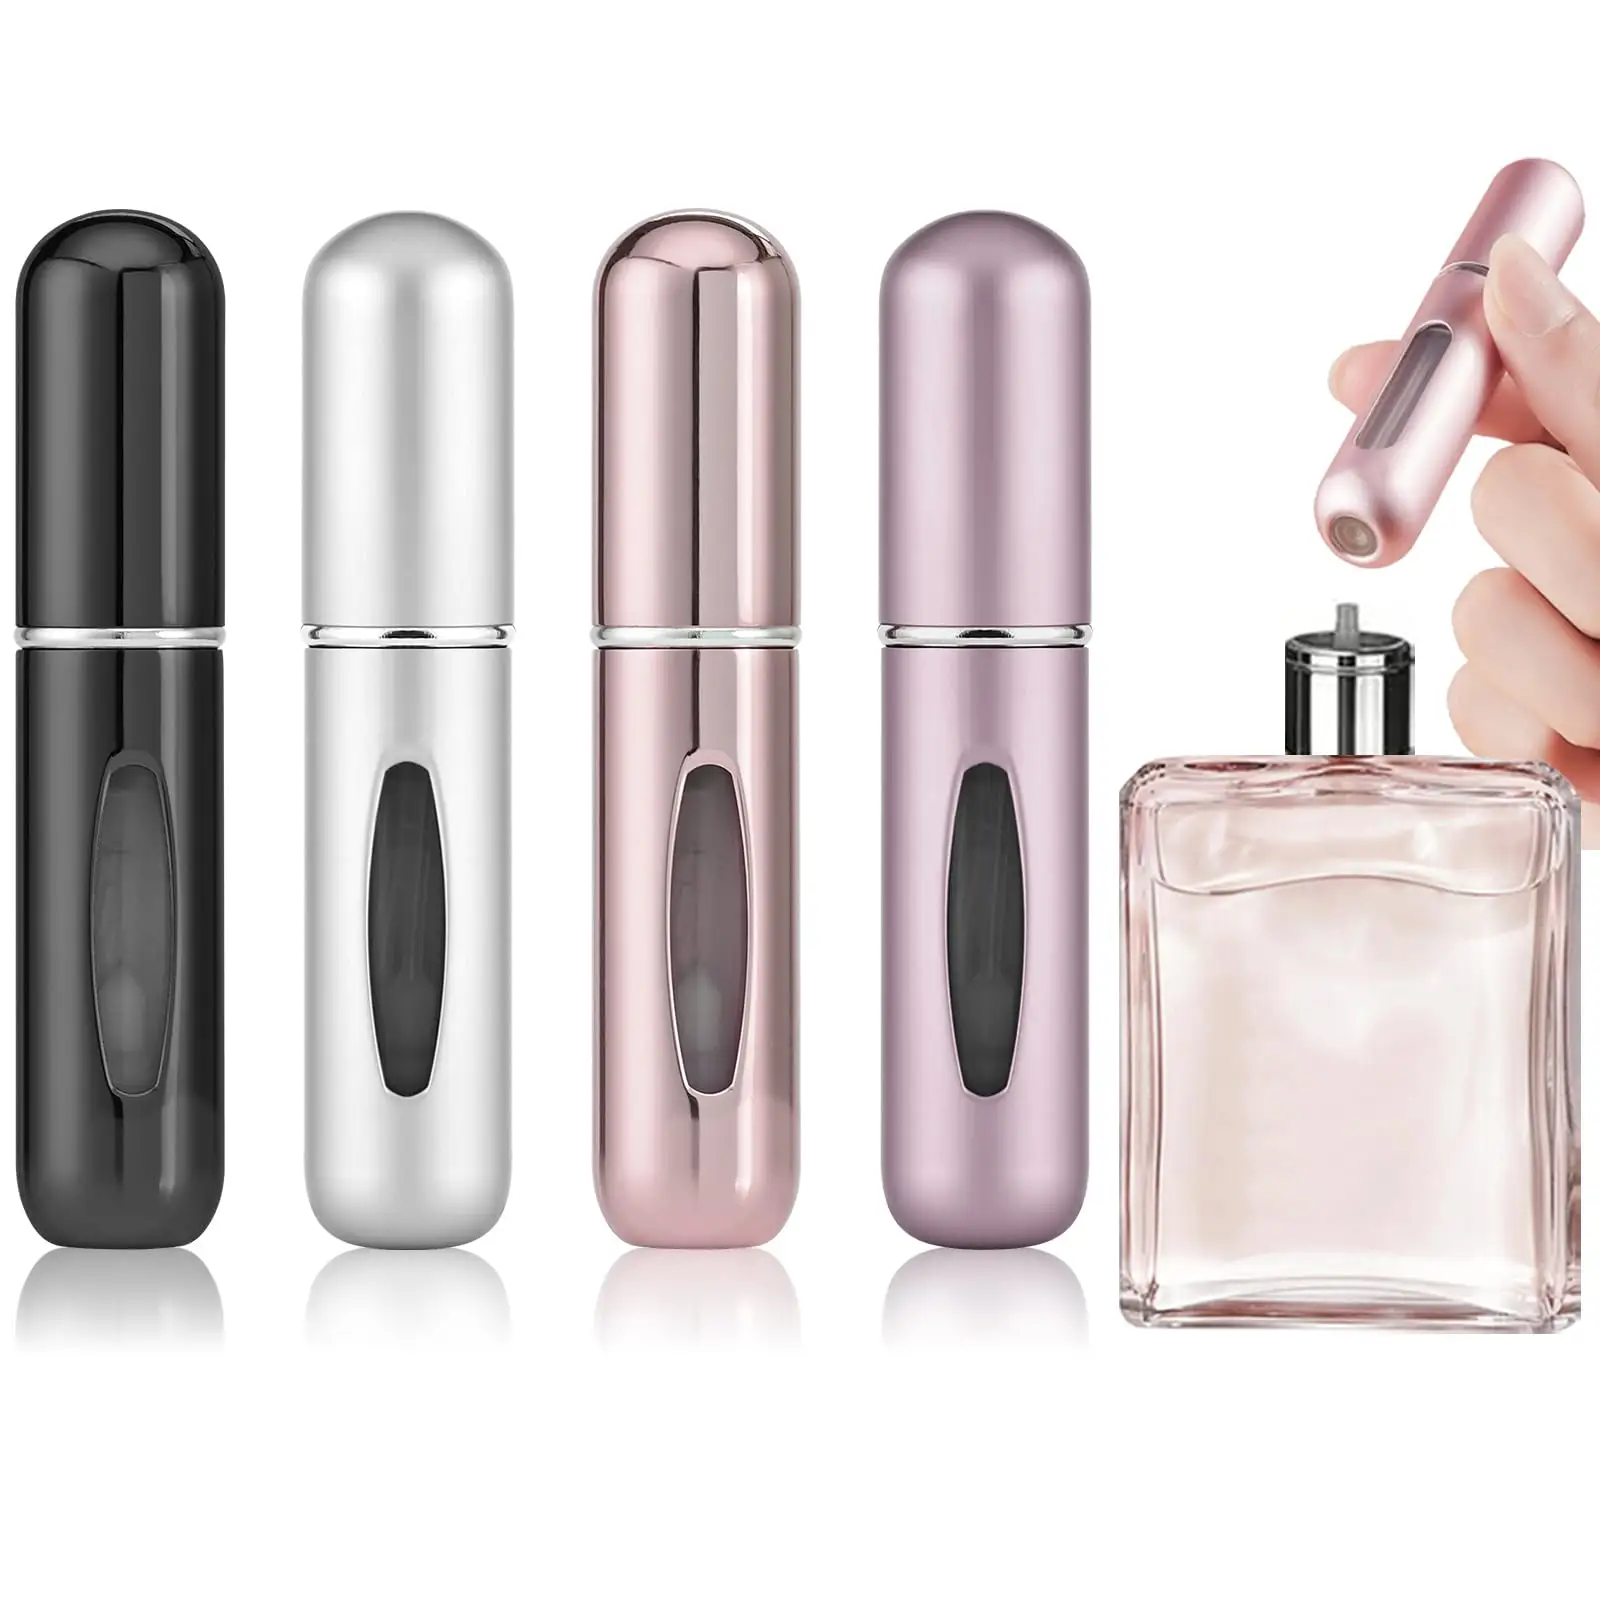 Kustom Logo Mini parfum kecil dapat digunakan kembali perjalanan botol isi ulang parfum Atomizer perjalanan botol kosong semprot parfum Dispenser